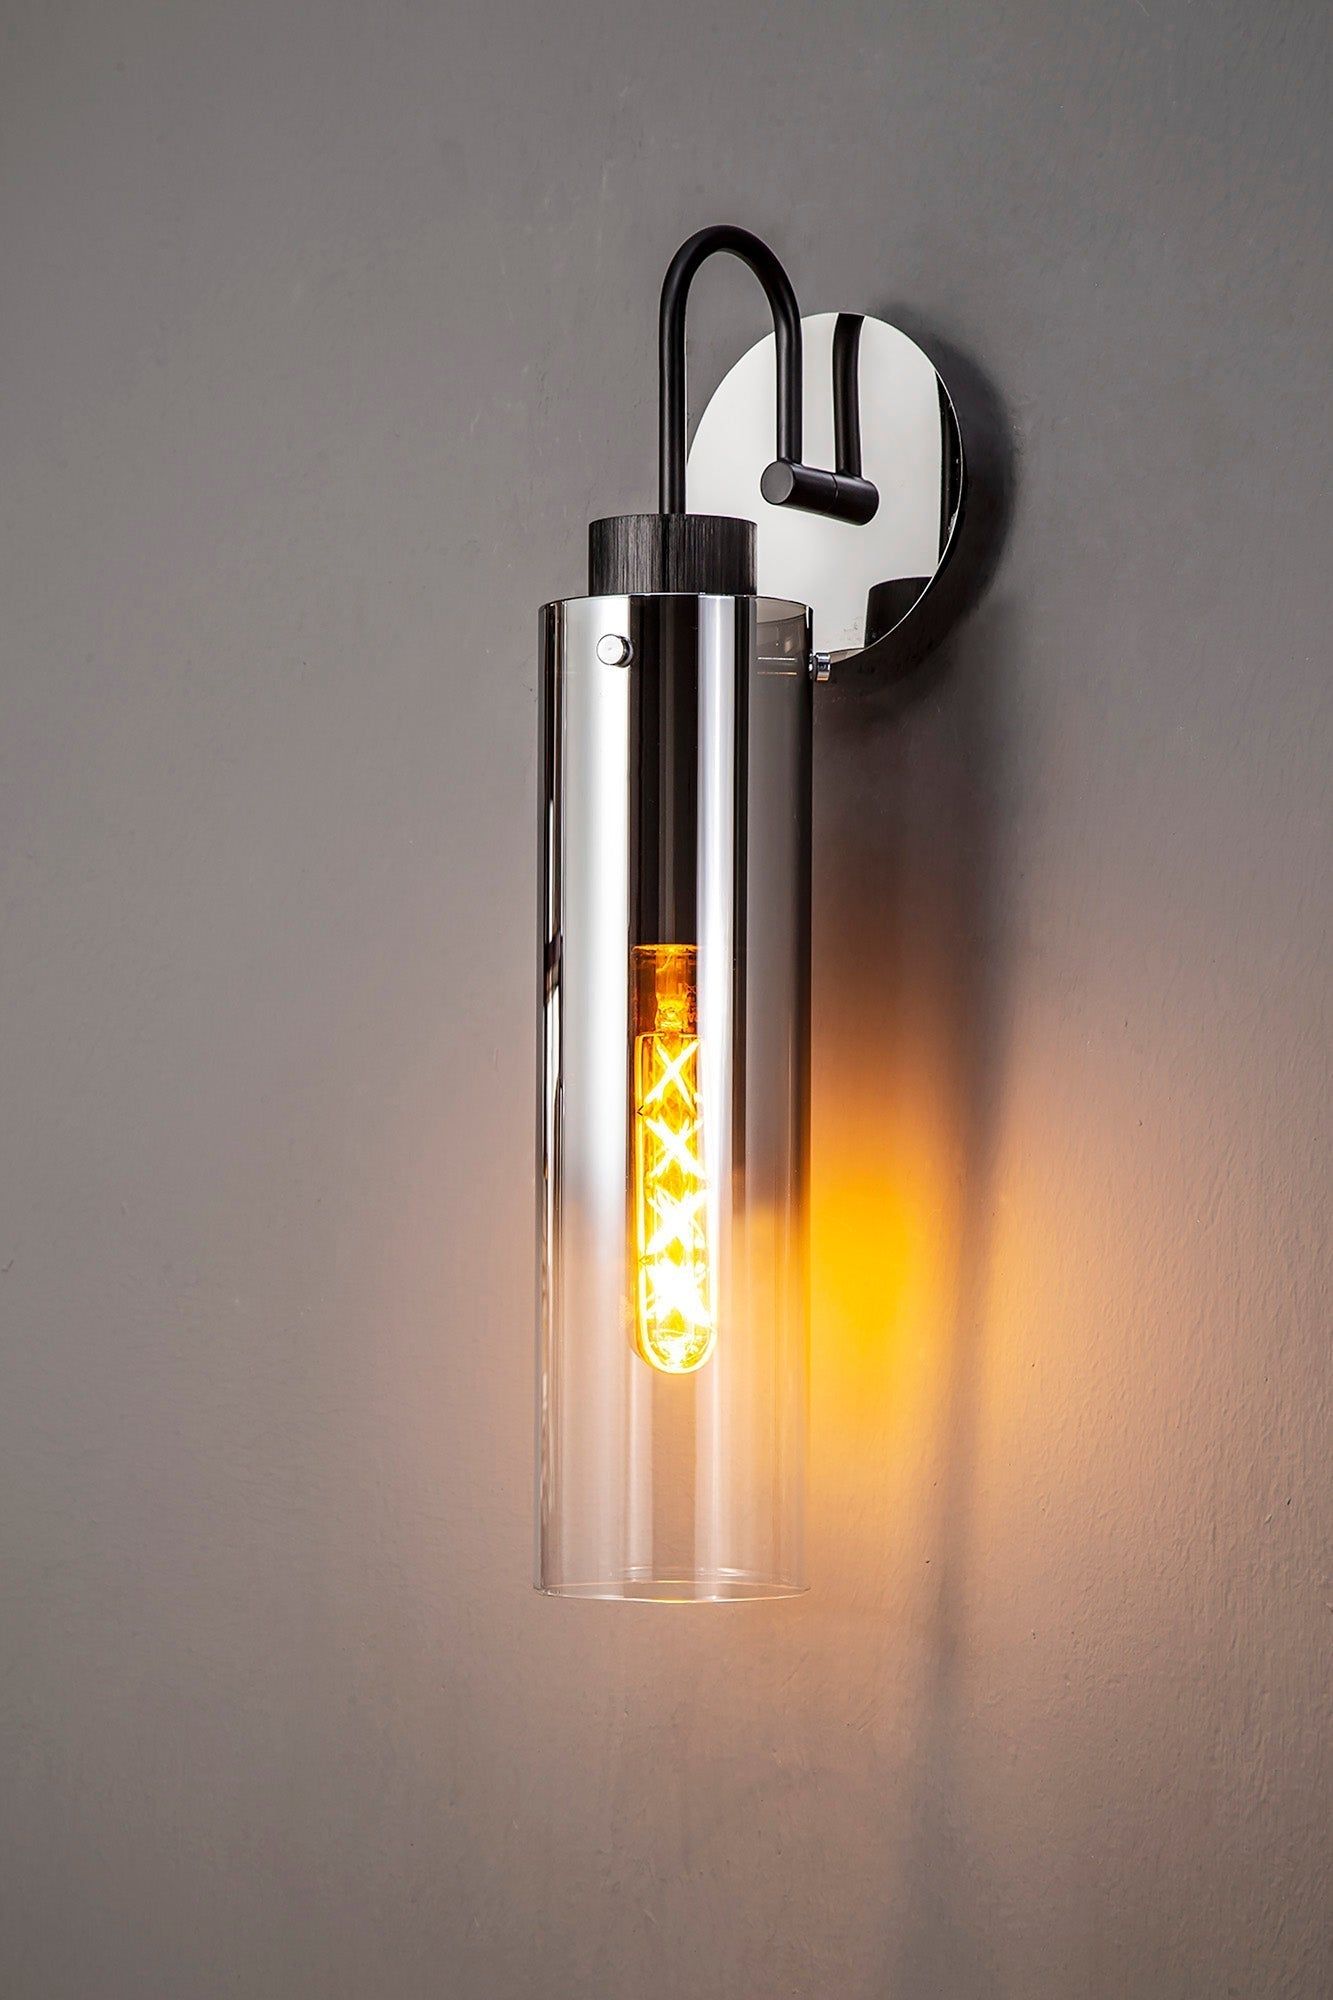 Blake Slim Single Switched Wall Lamp, 1 Light, E27, Black/Smoke Fade Glass